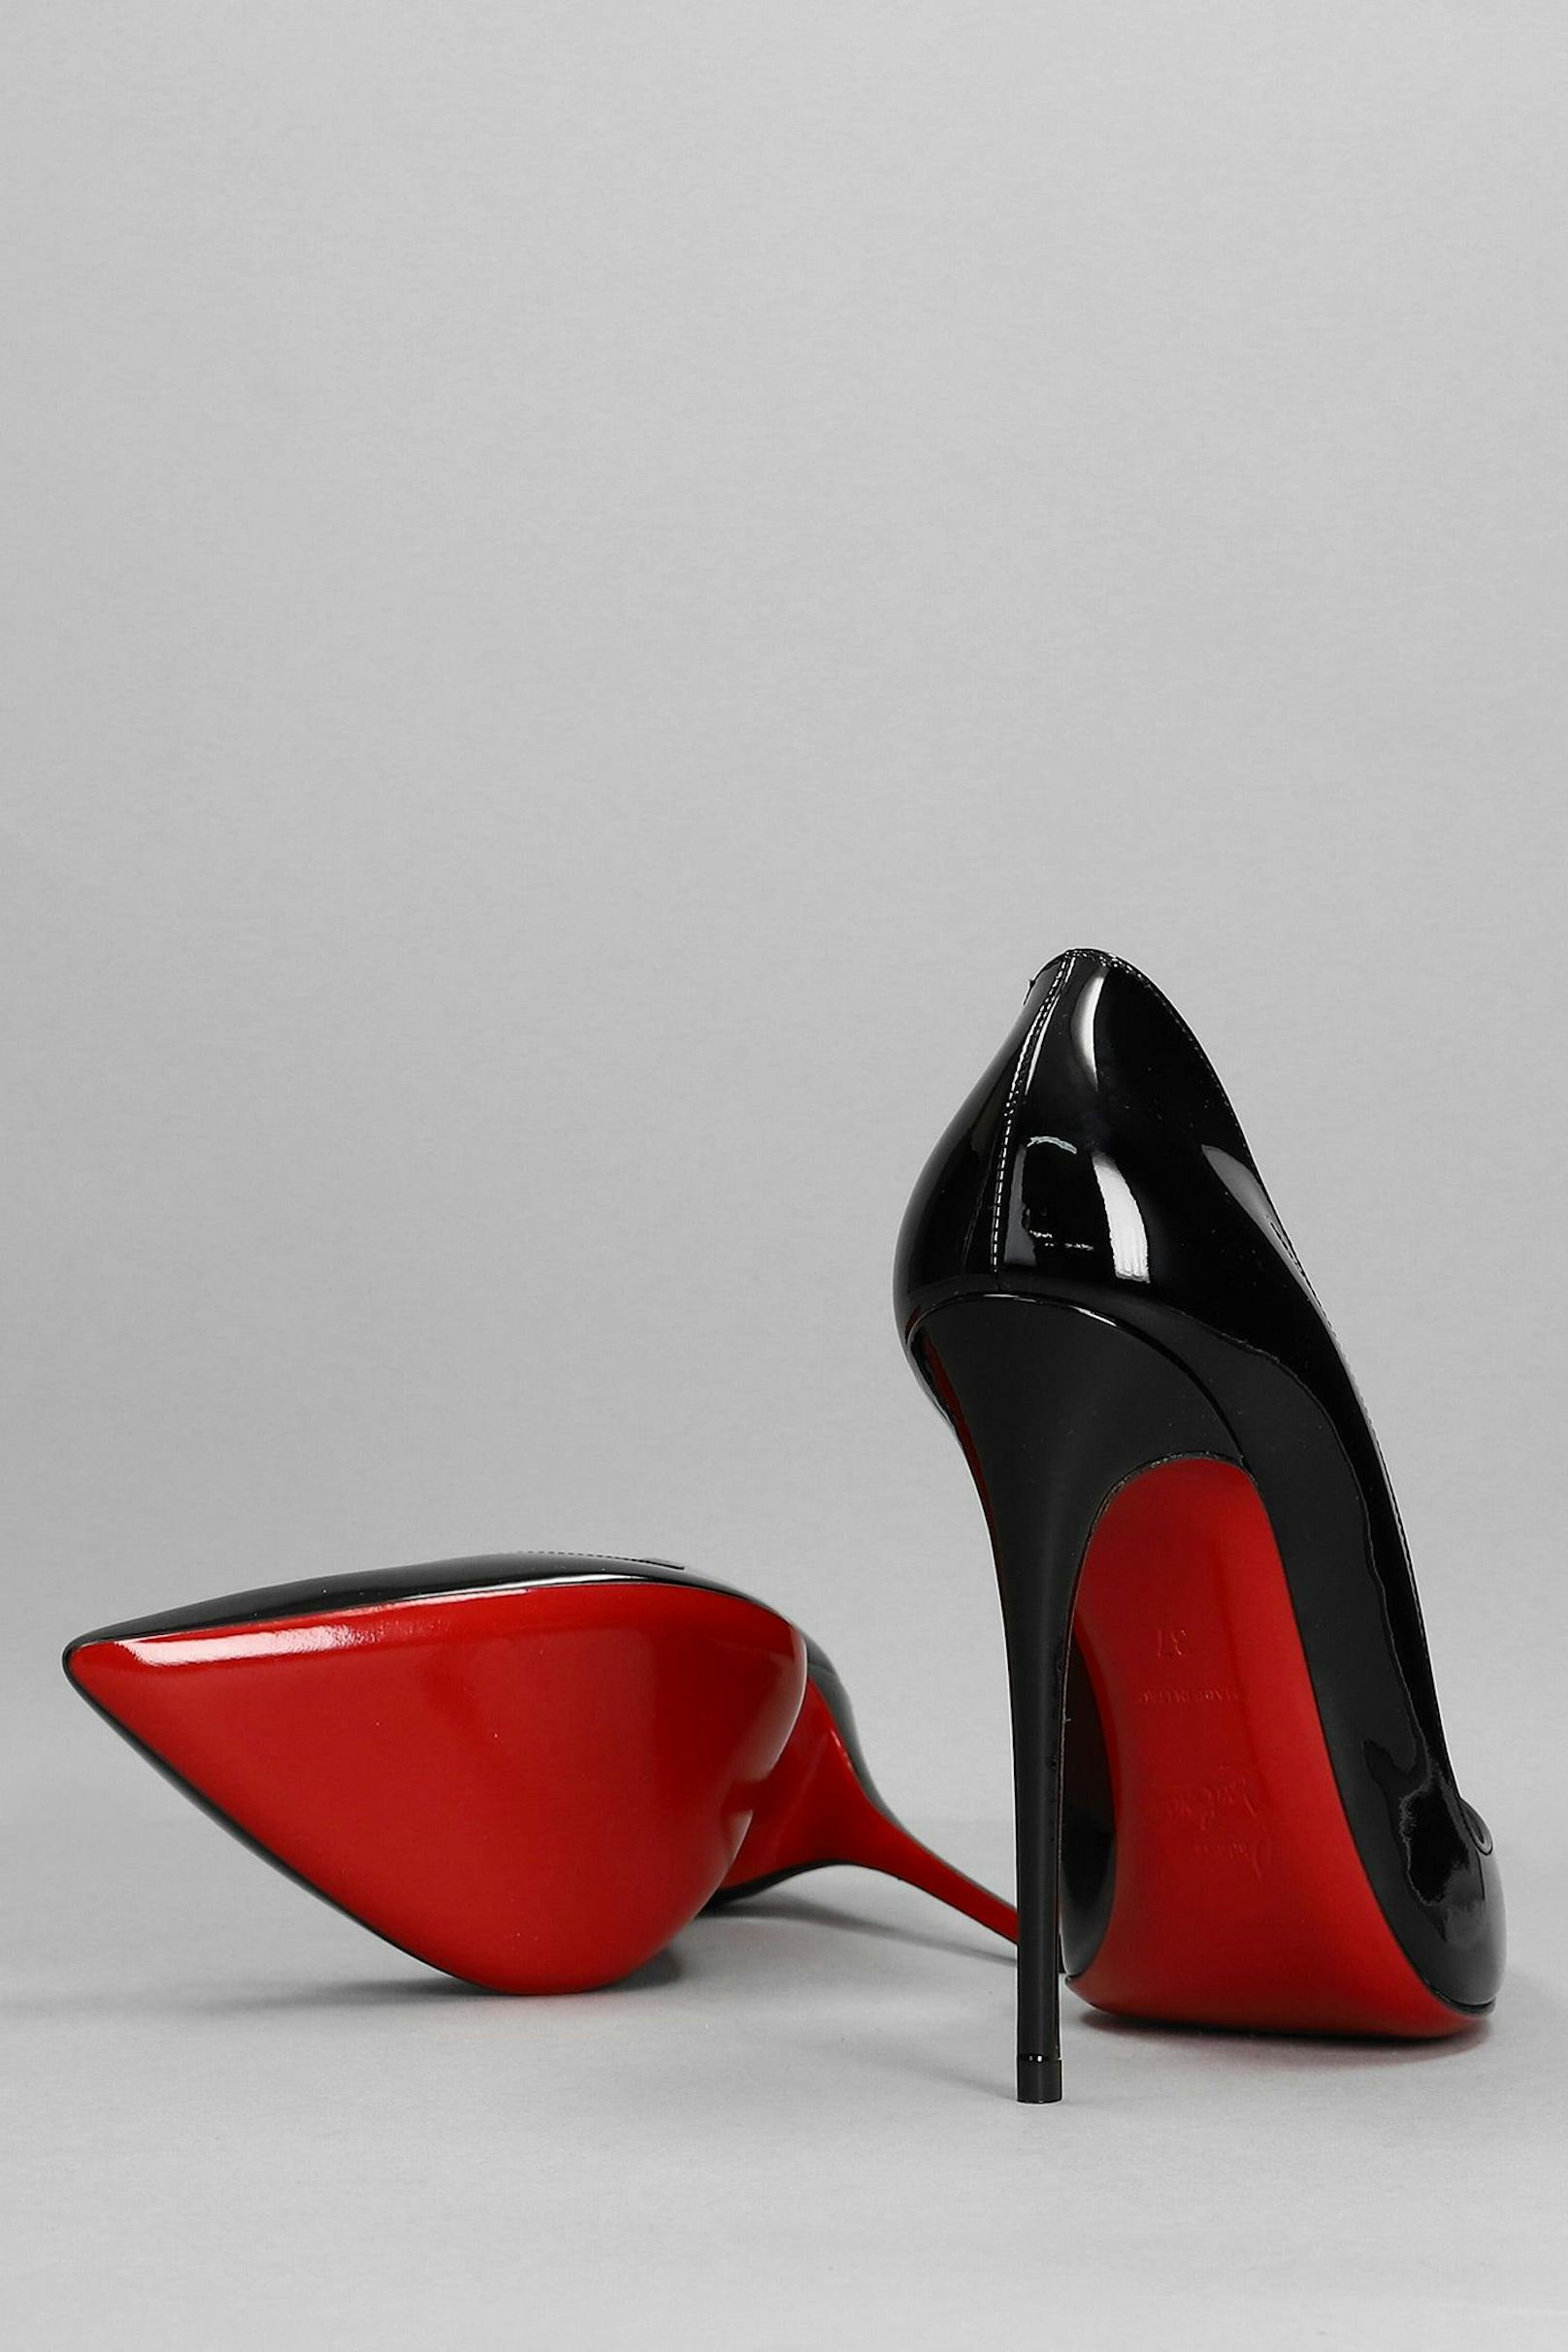 Schuhe vom französischen Designer Christian Louboutin werden mit Sex-Appeal und vor allem der roten Signatur-Sohle in Verbindung gebracht.